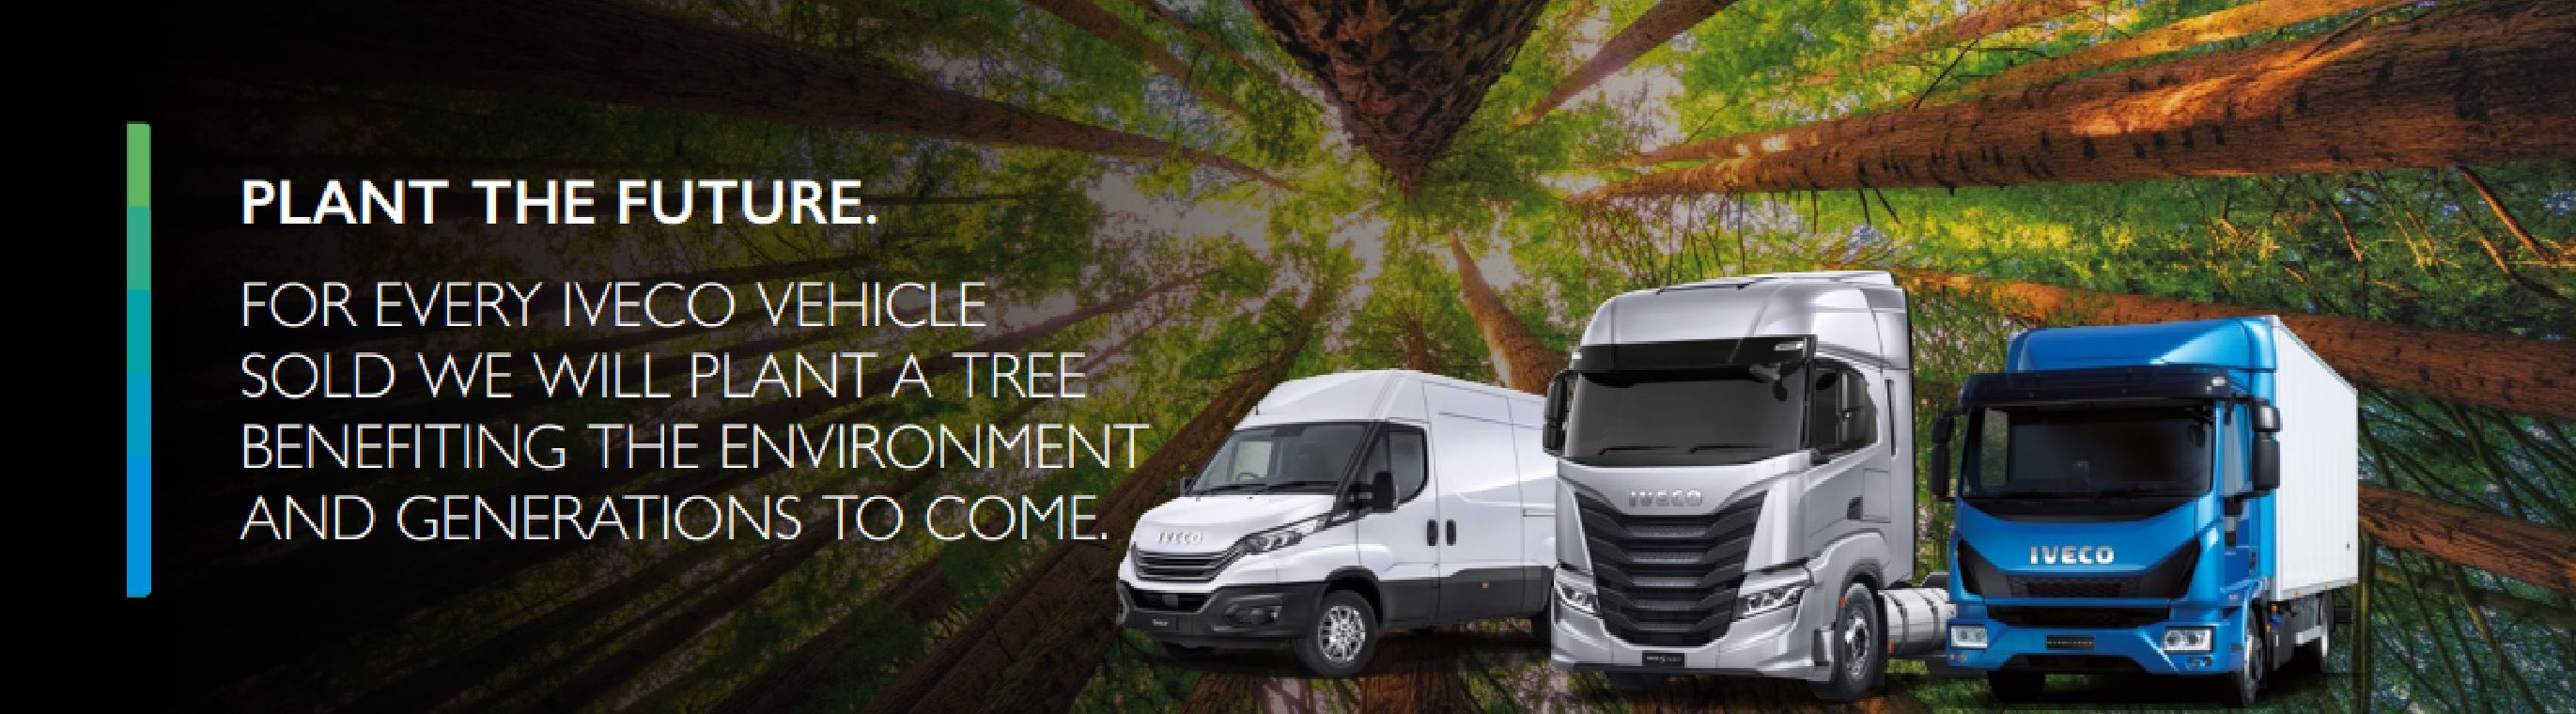 PLANT A TREE Acorn Truck Sales Ltd